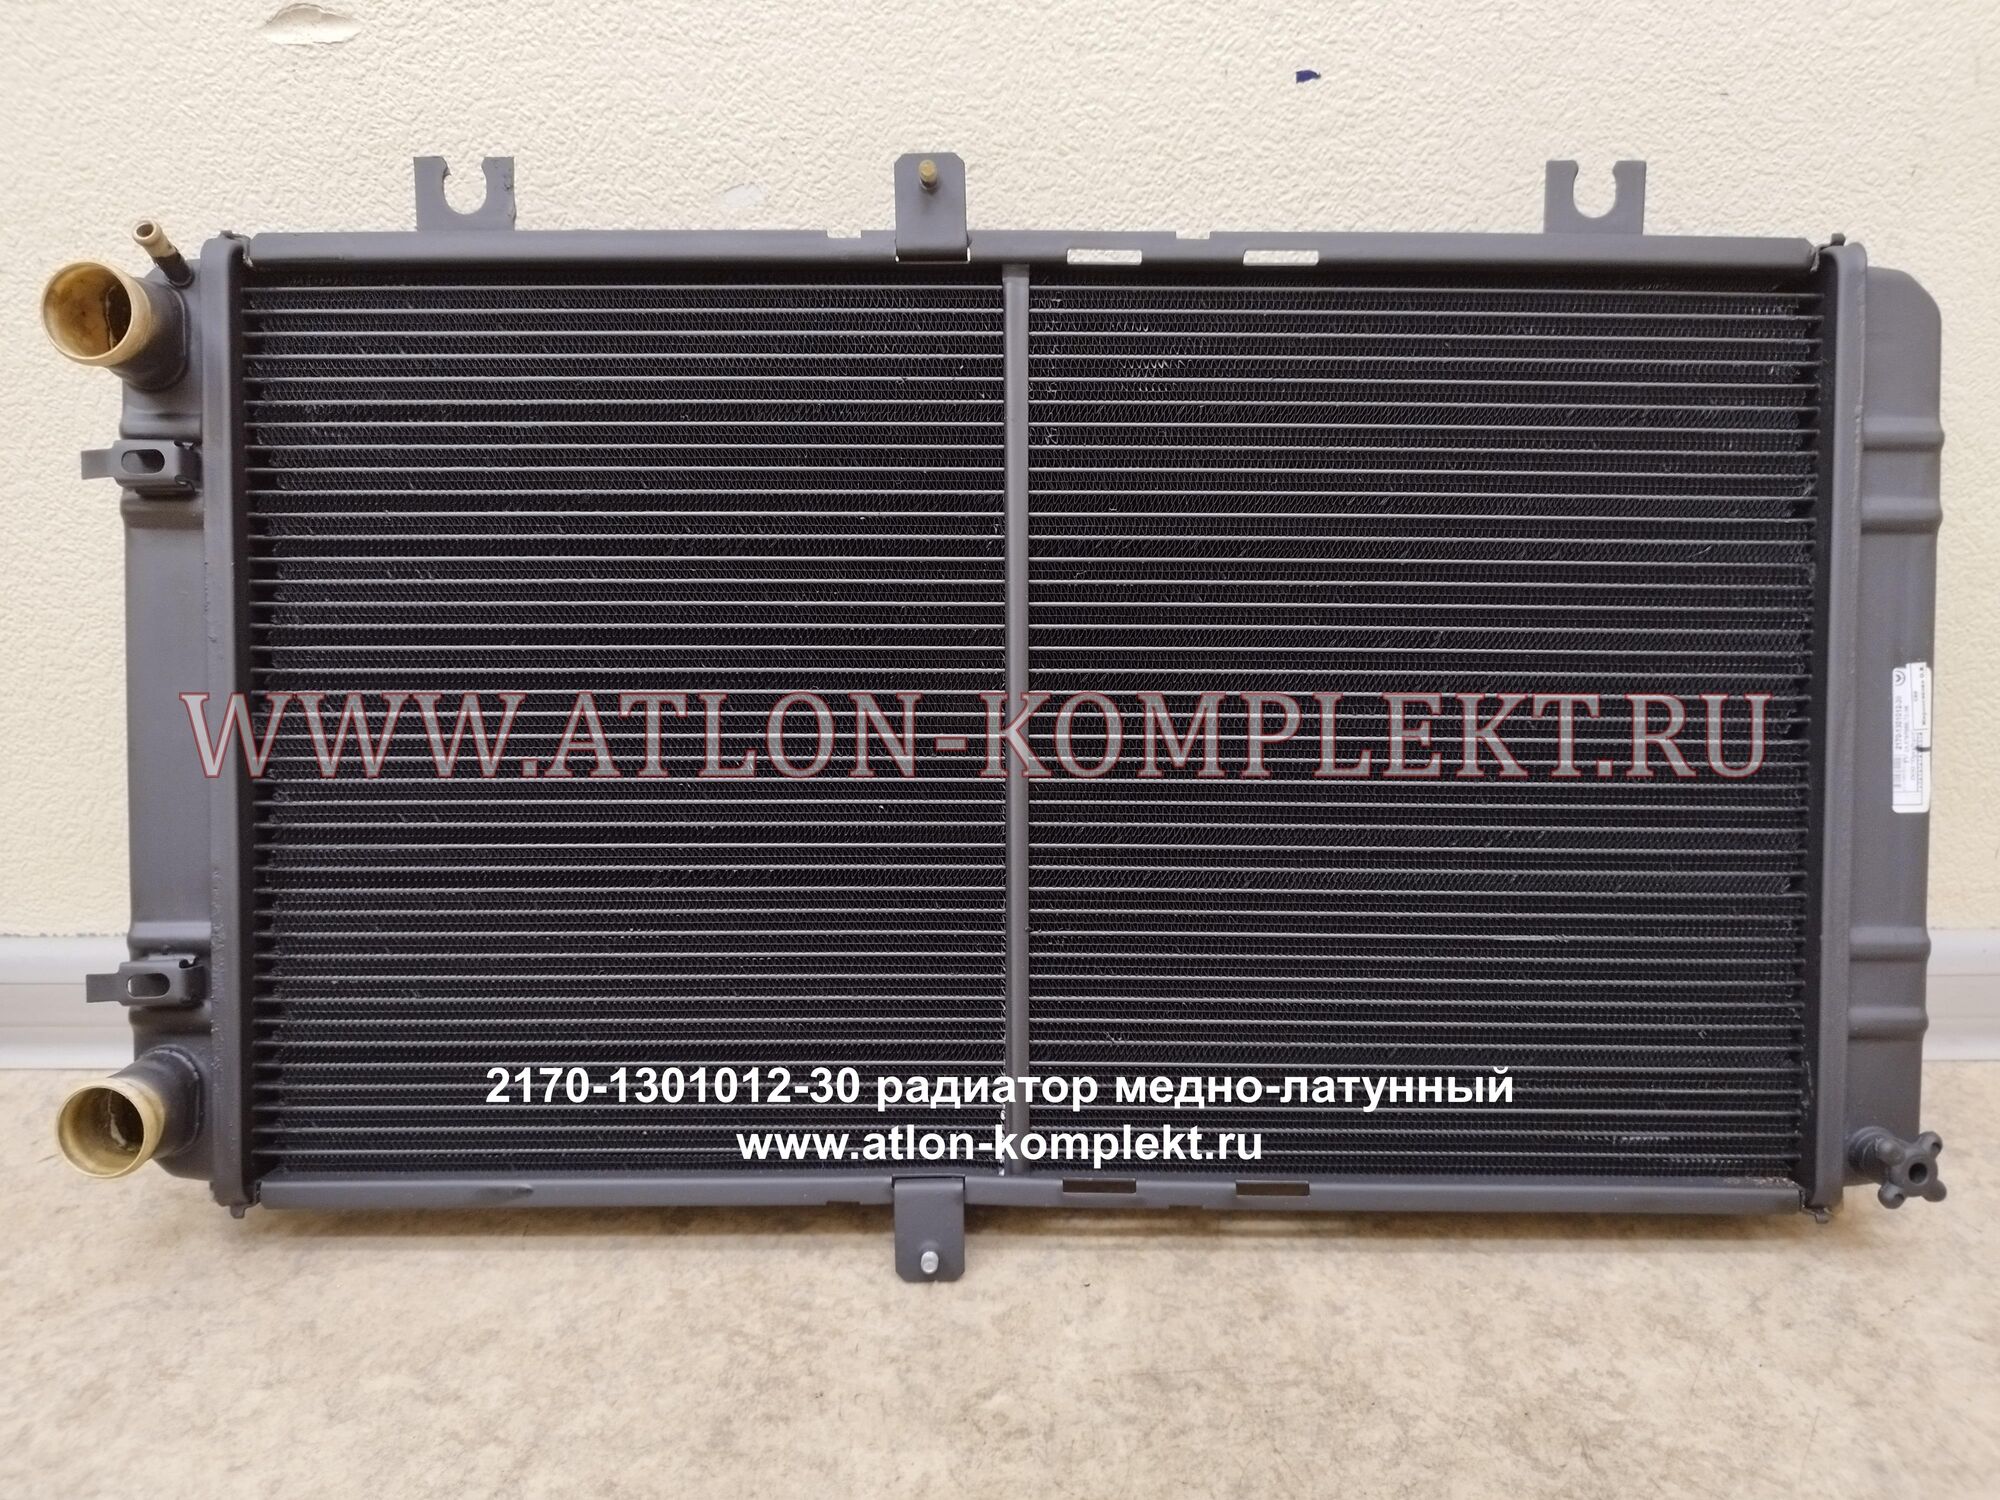 Радиатор Приора ВАЗ 2170.1301012-30 без кондиционера медный